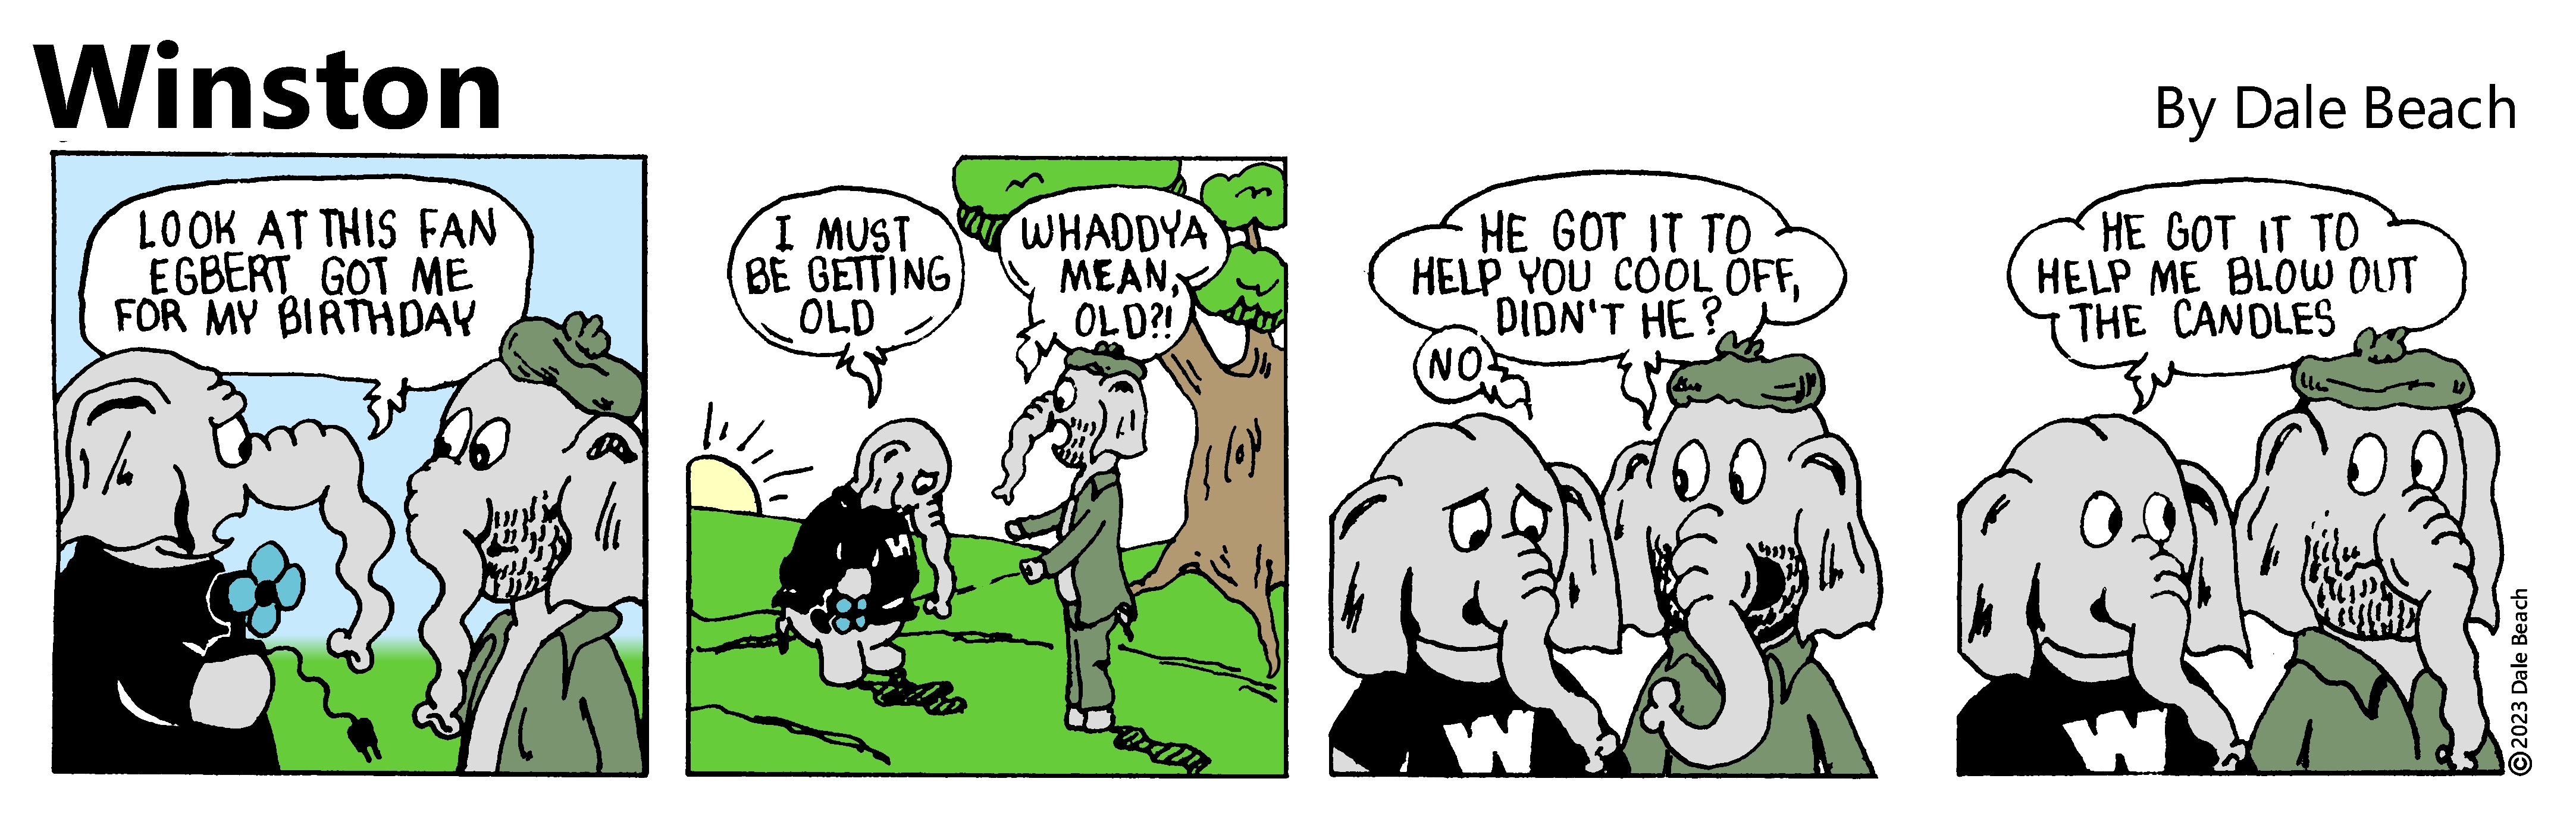 Winston cartoon strip